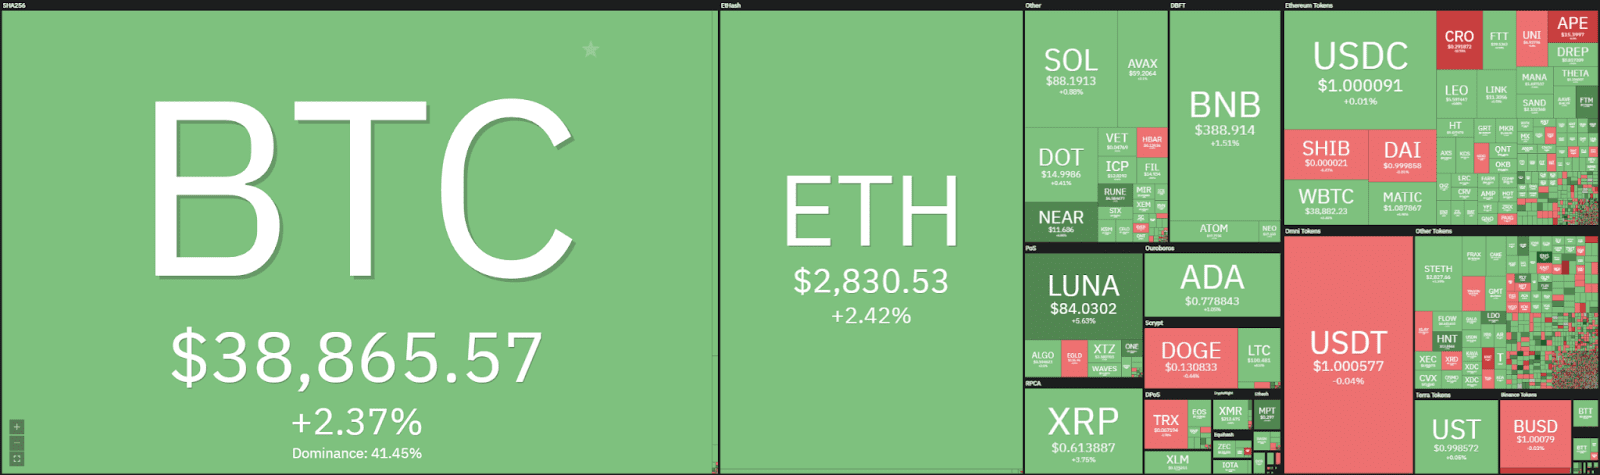 Análisis de precios de Ethereum: ETH reacciona a la baja desde $ 2,850, ¿otro impulso a la baja entrante? 1